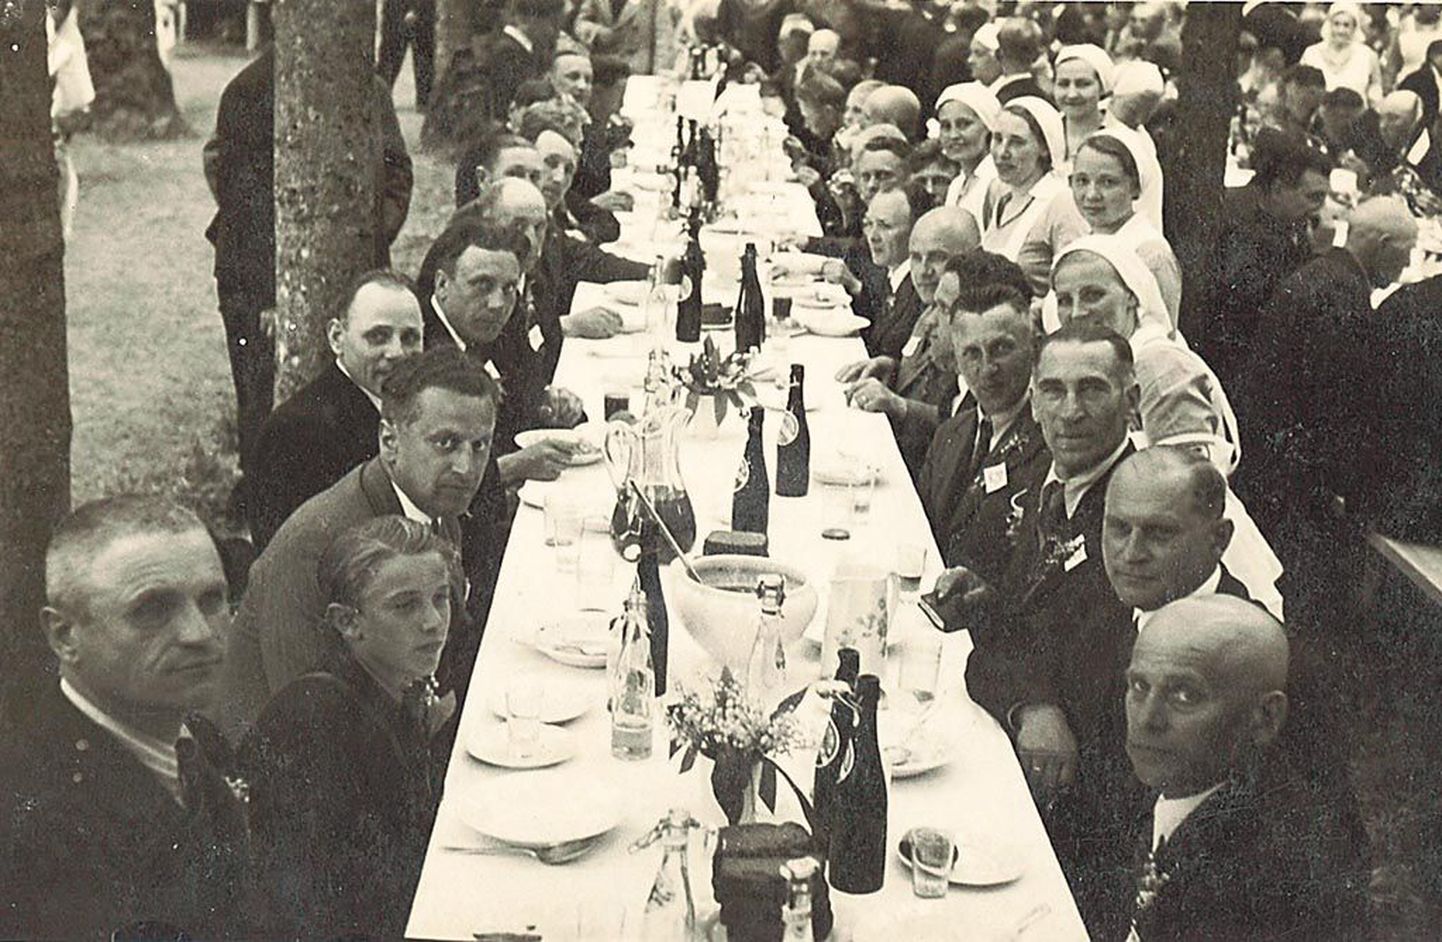 Ringkäigu järel paluti Sindis külalised vabriku pargis lauda. Sellelt rariteetselt, juhuslikult leitud fotolt näeb valge linaga kaetud lauda, millel heledad portselantaldrikud.